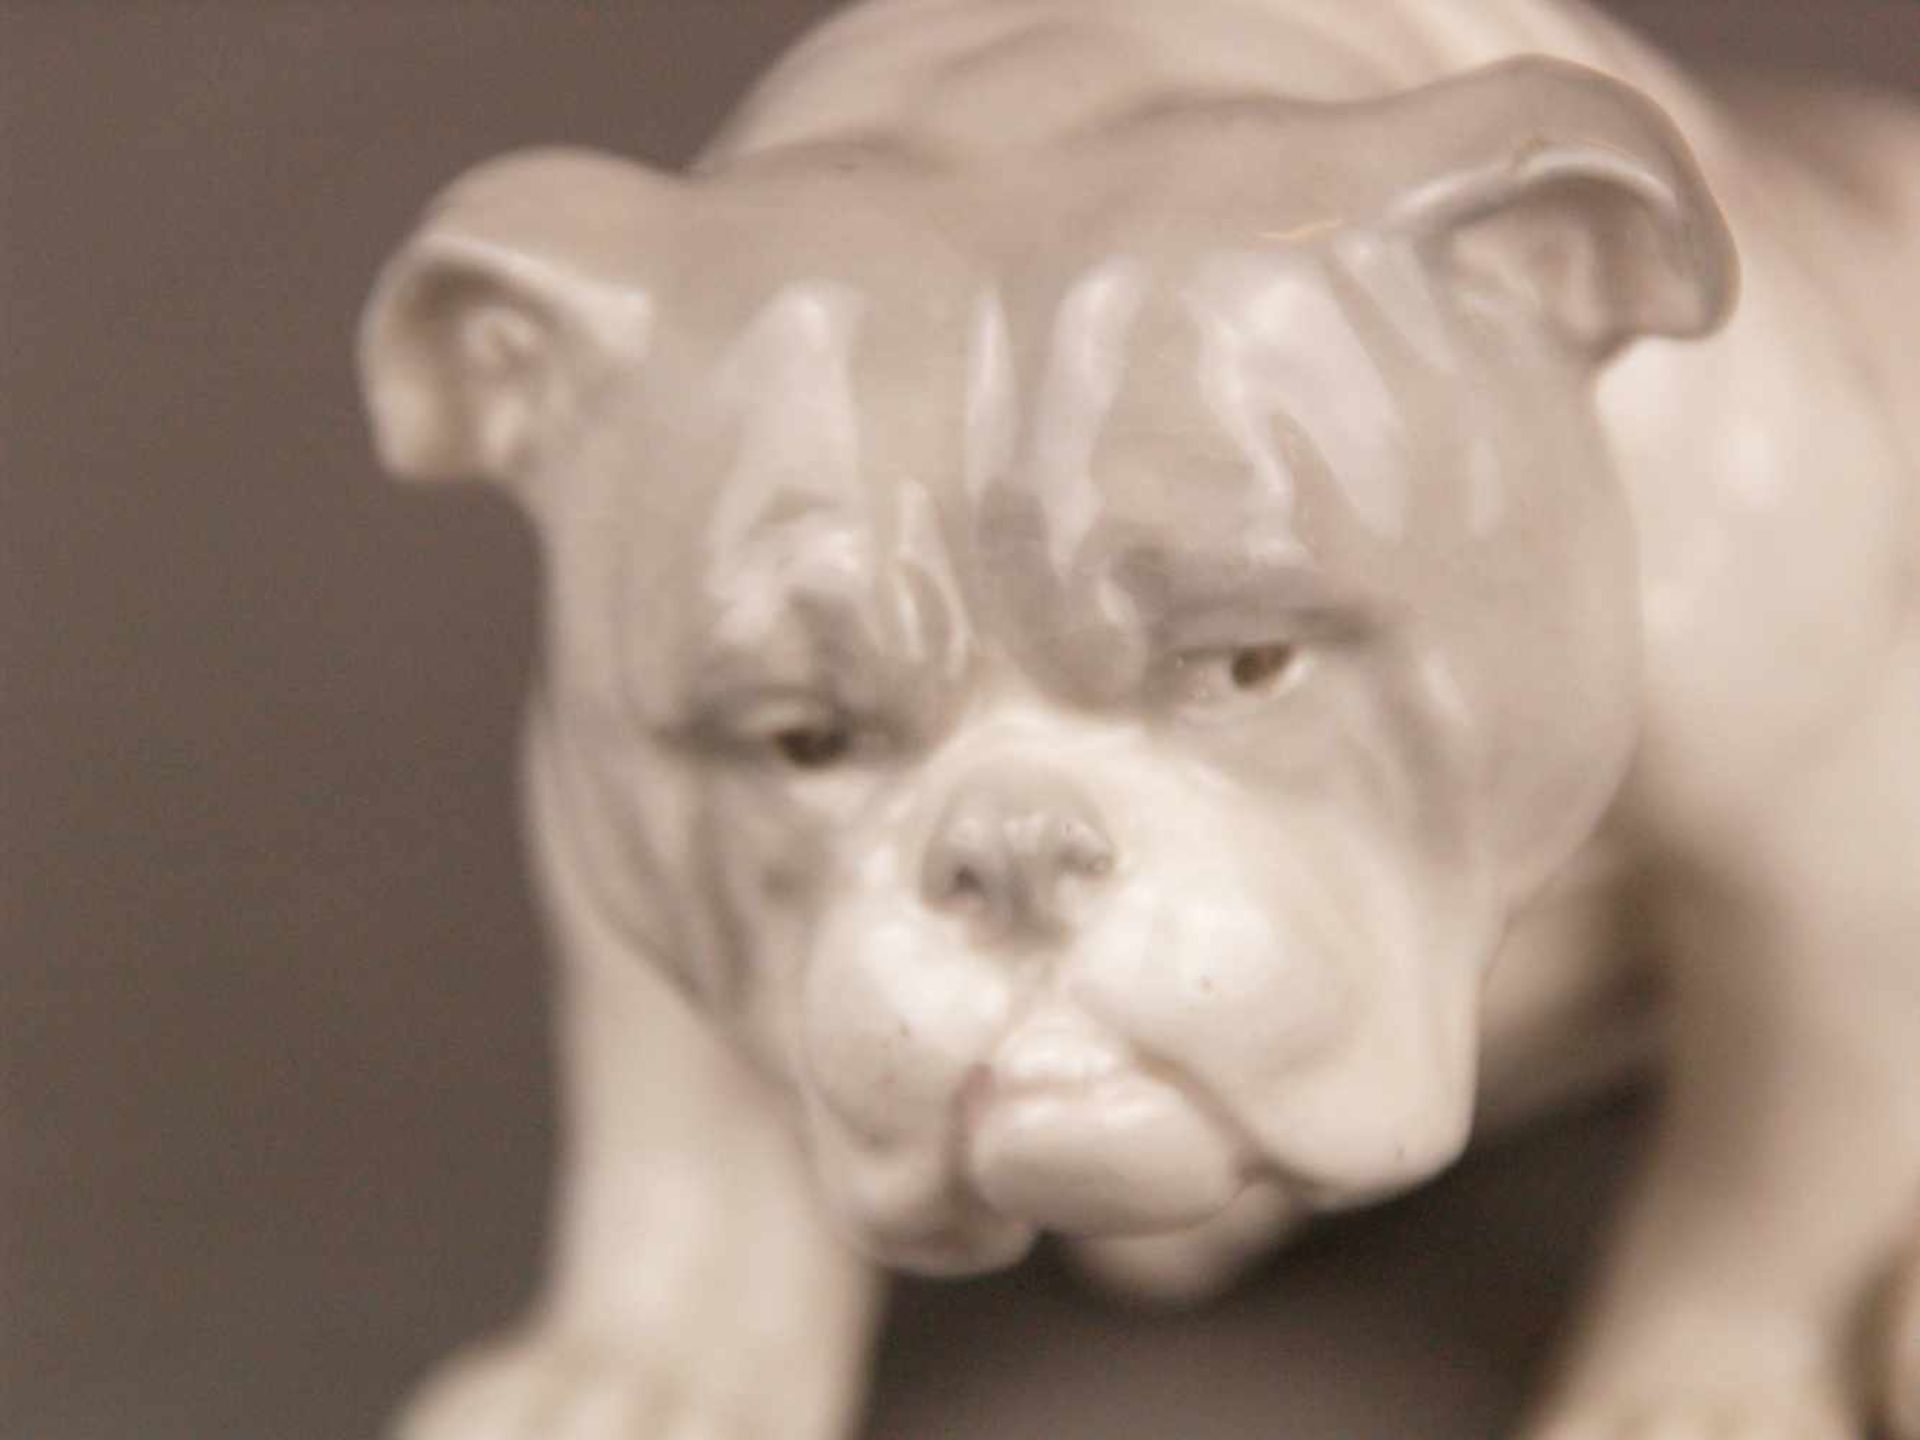 Porzellanfigur Bulldogge - wohl Gebrüder Heubach/Lichte um 1920, pastelltönige - Bild 2 aus 6